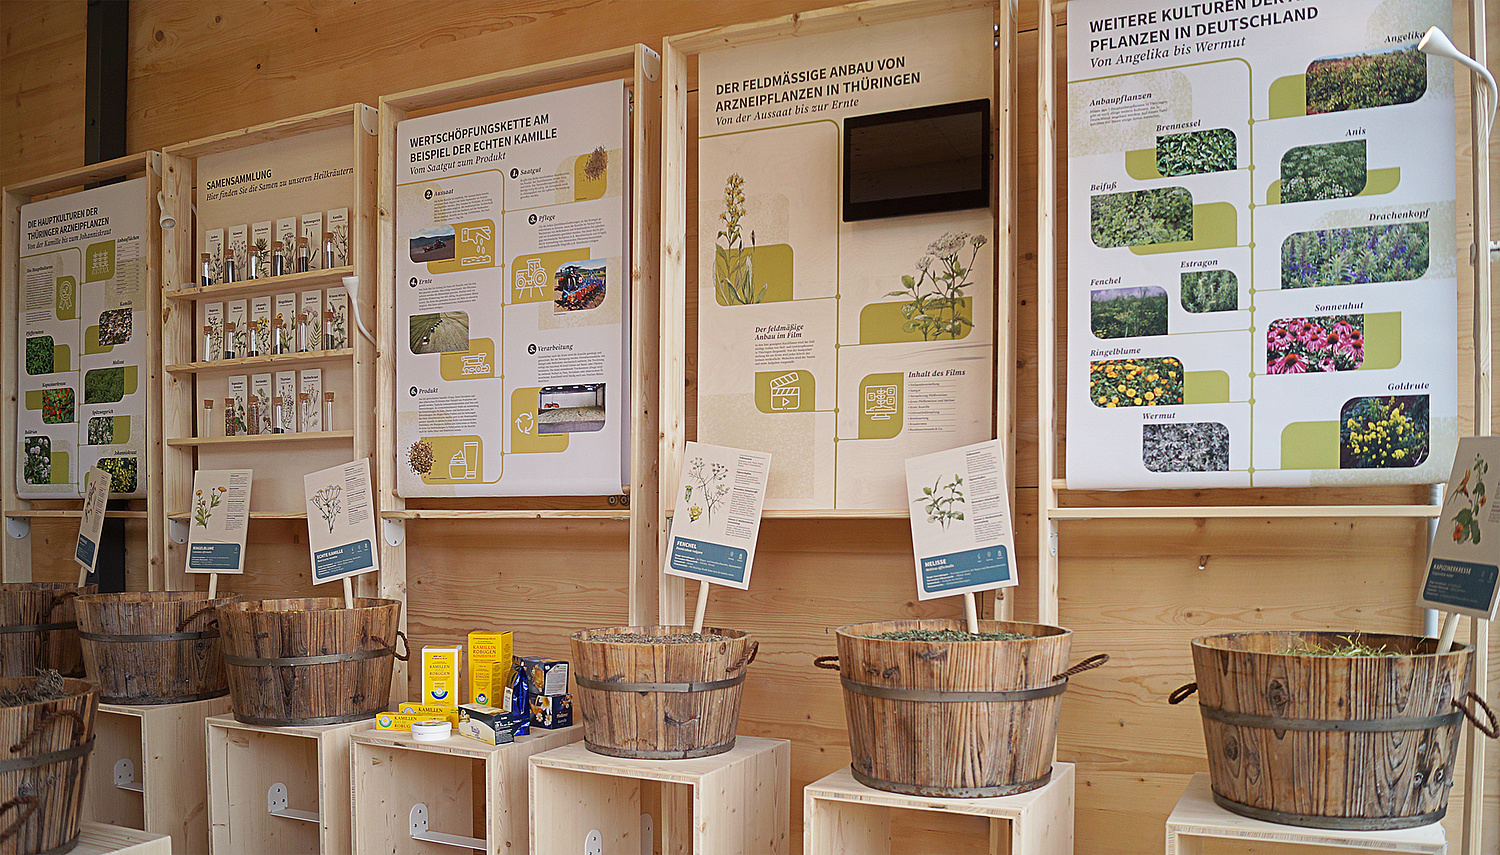 Verschiedene Module zum Anbau und Verarbeitung von Heilpflanzen in Thüringen und Deutschland. (© Papenfuss | Atelier)